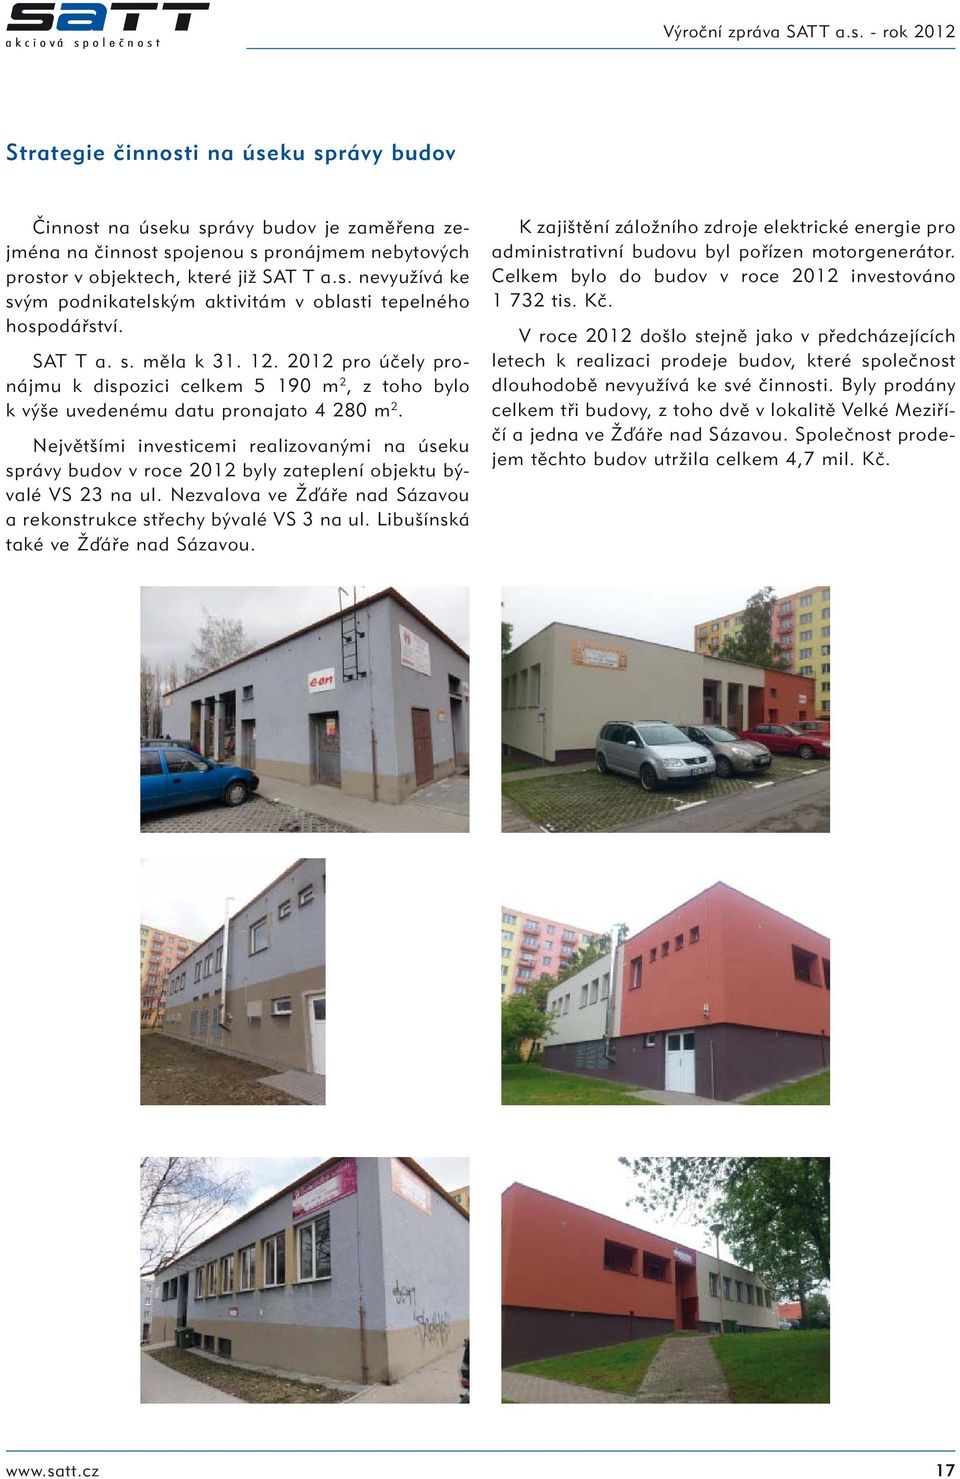 Největšími investicemi realizovanými na úseku správy budov v roce 2012 byly zateplení objektu bývalé VS 23 na ul. Nezvalova ve Žďáře nad Sázavou a rekonstrukce střechy bývalé VS 3 na ul.